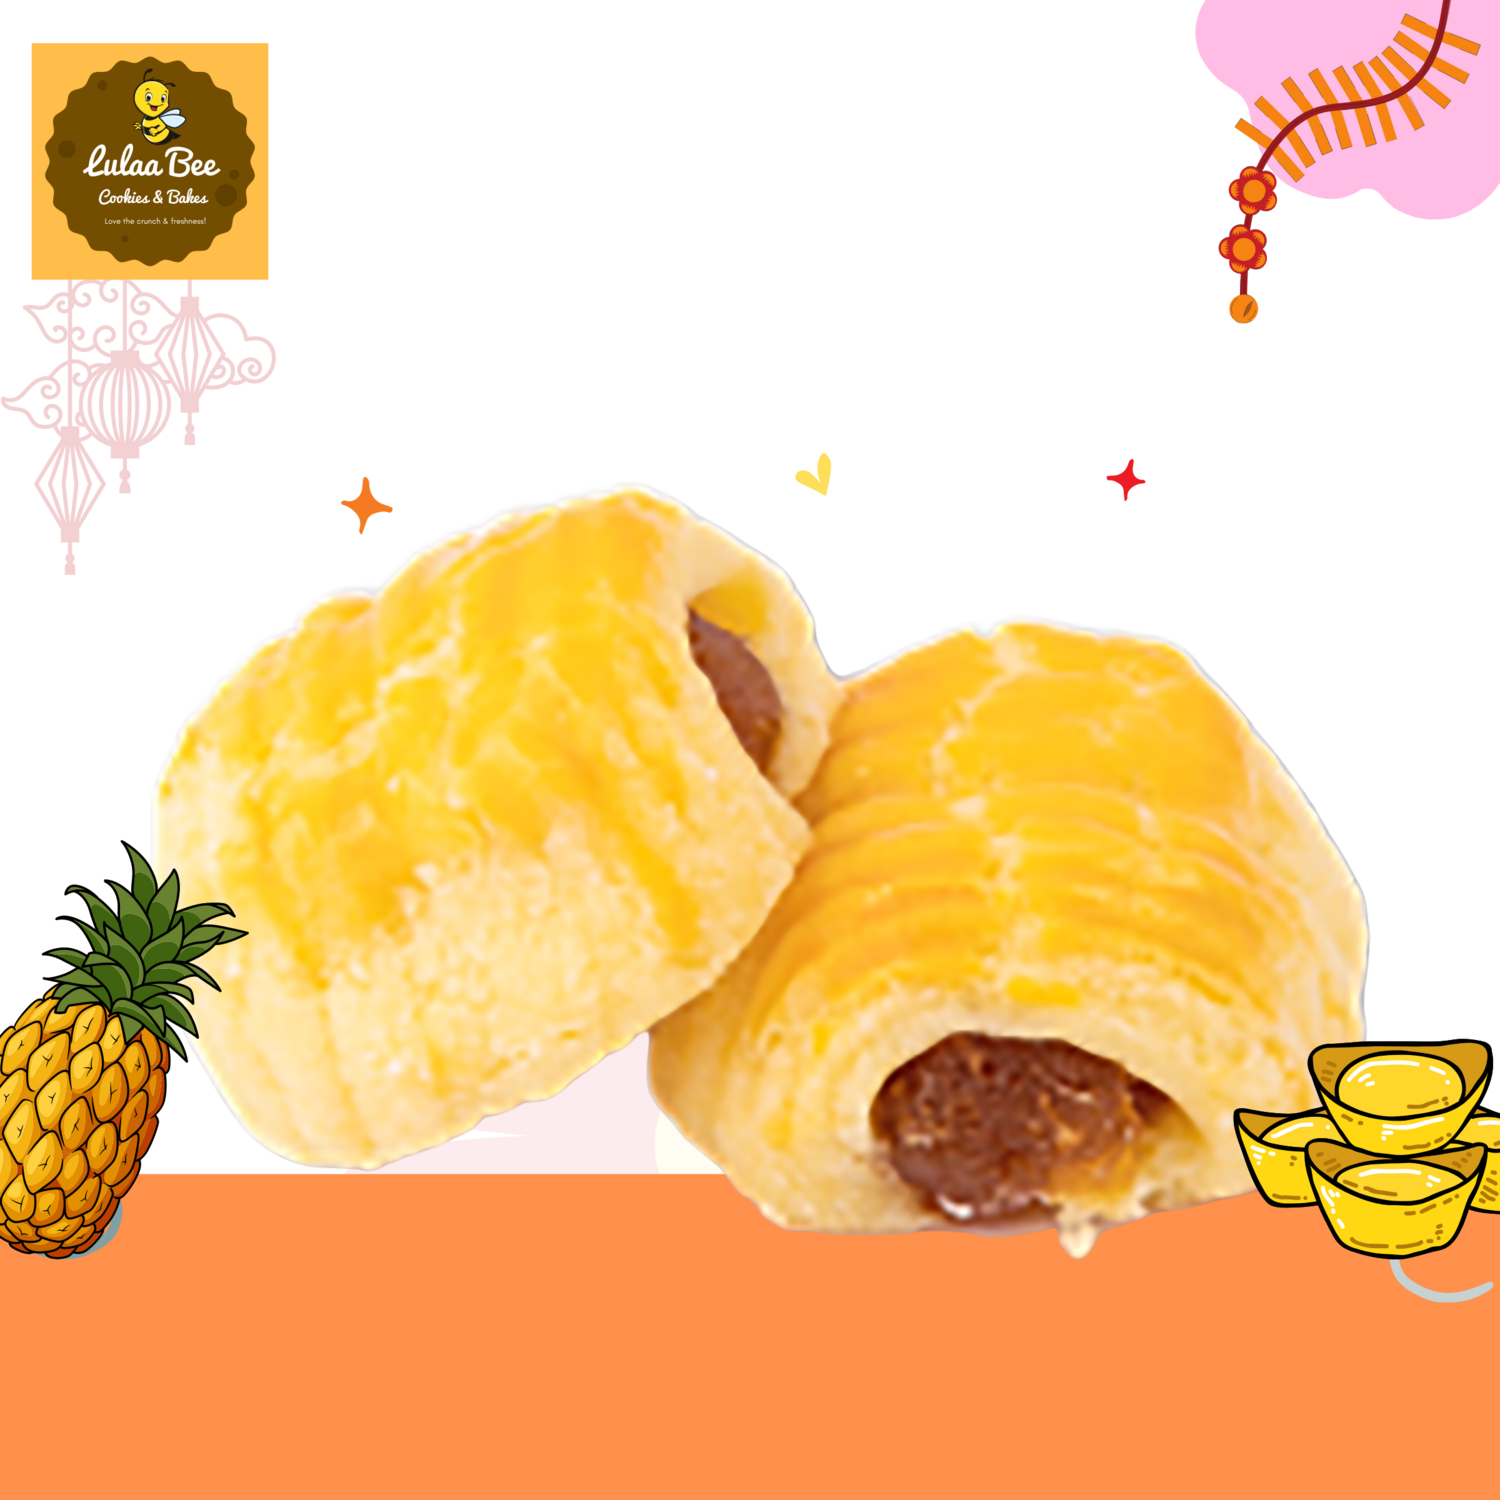 Golden Crunch Pineapple Roll 金牌香酥黄梨卷